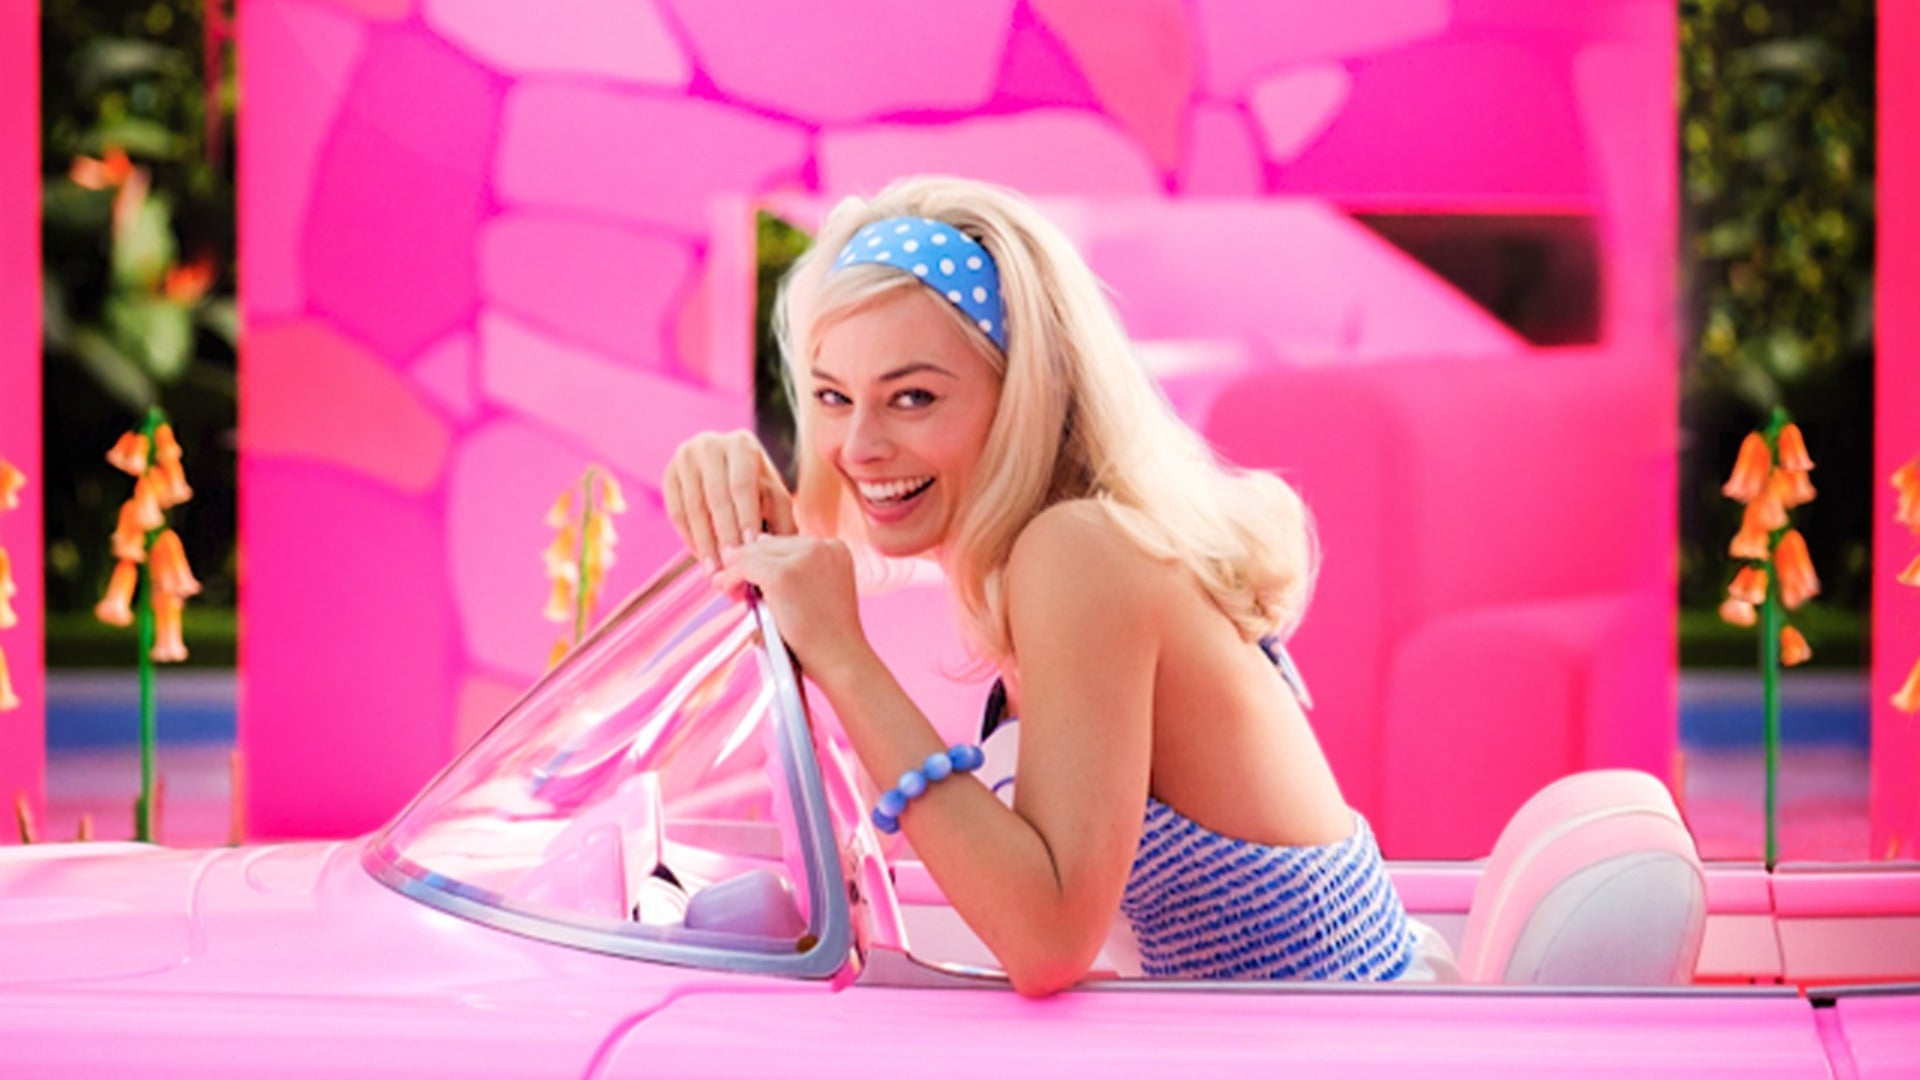 ΗΠΑ: Παρά την επιτυχία της Barbie, το Χόλιγουντ καταγράφει έλλειψη από ηρωίδες